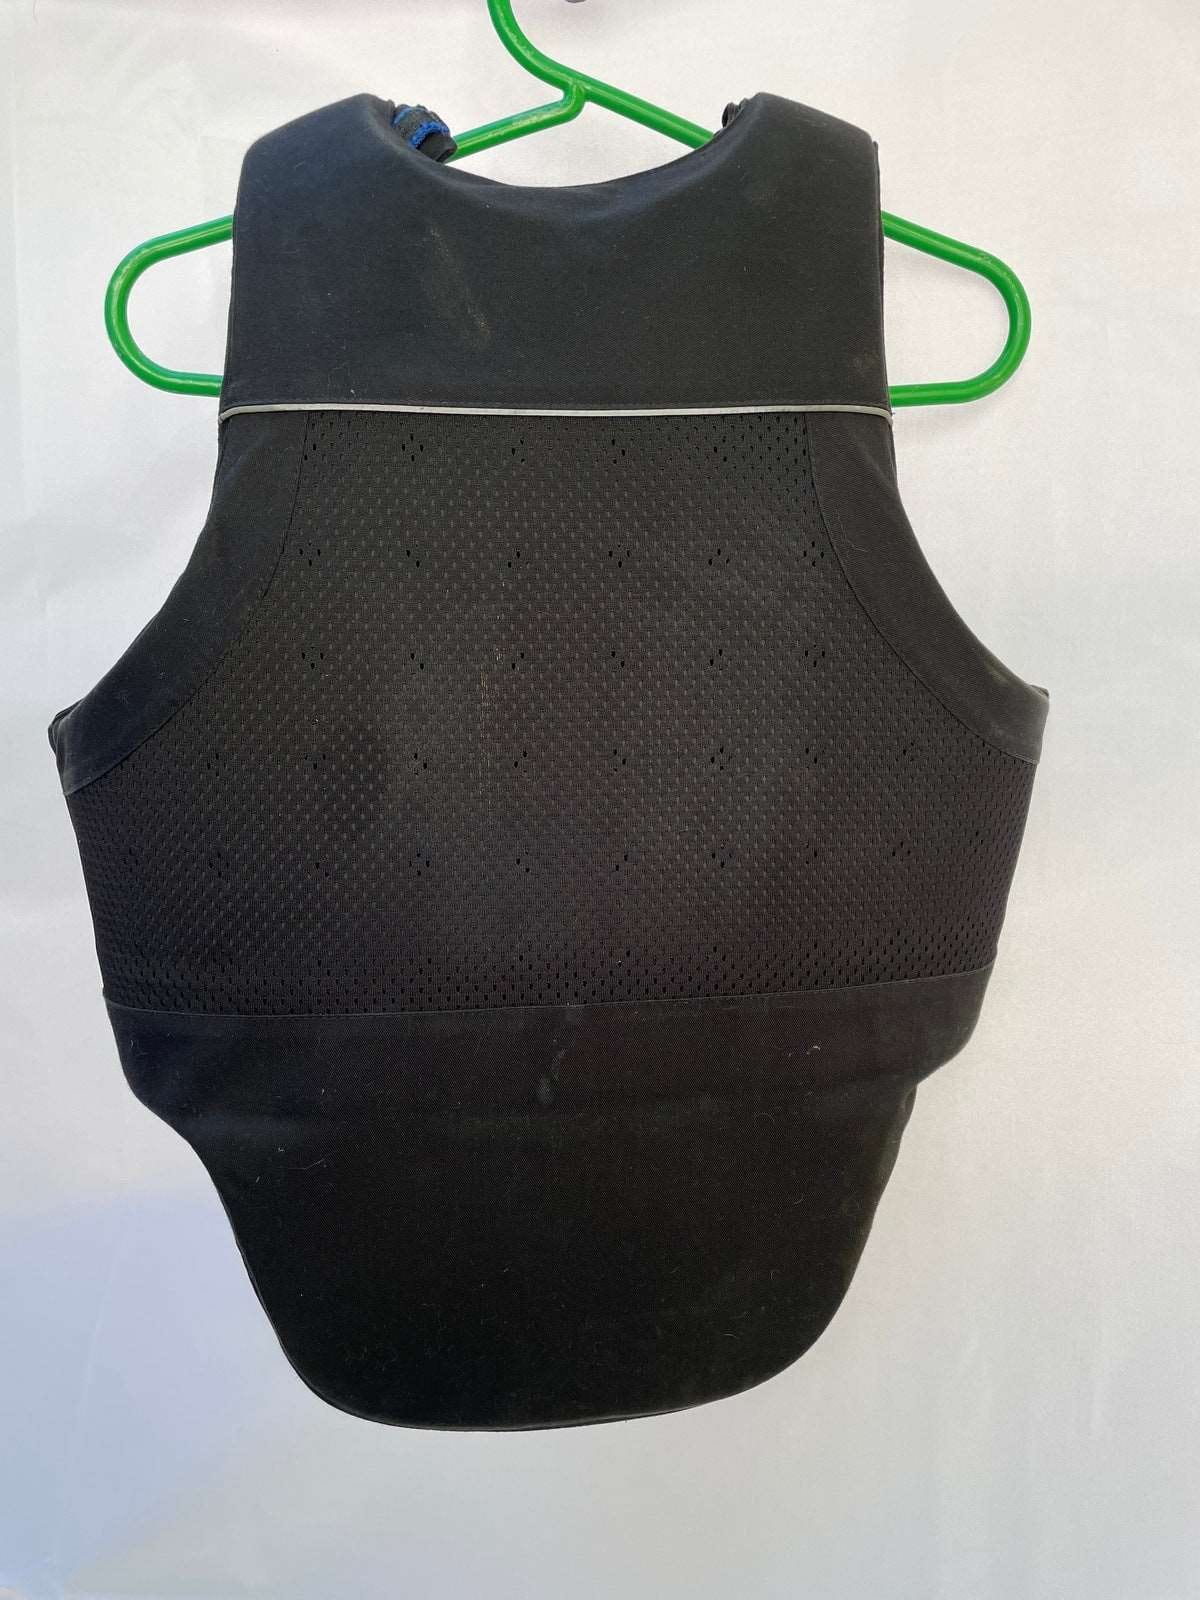 ThriftedEquestrian Clothing Accessories Child XL Charles Owen Safety Vest - Child XL